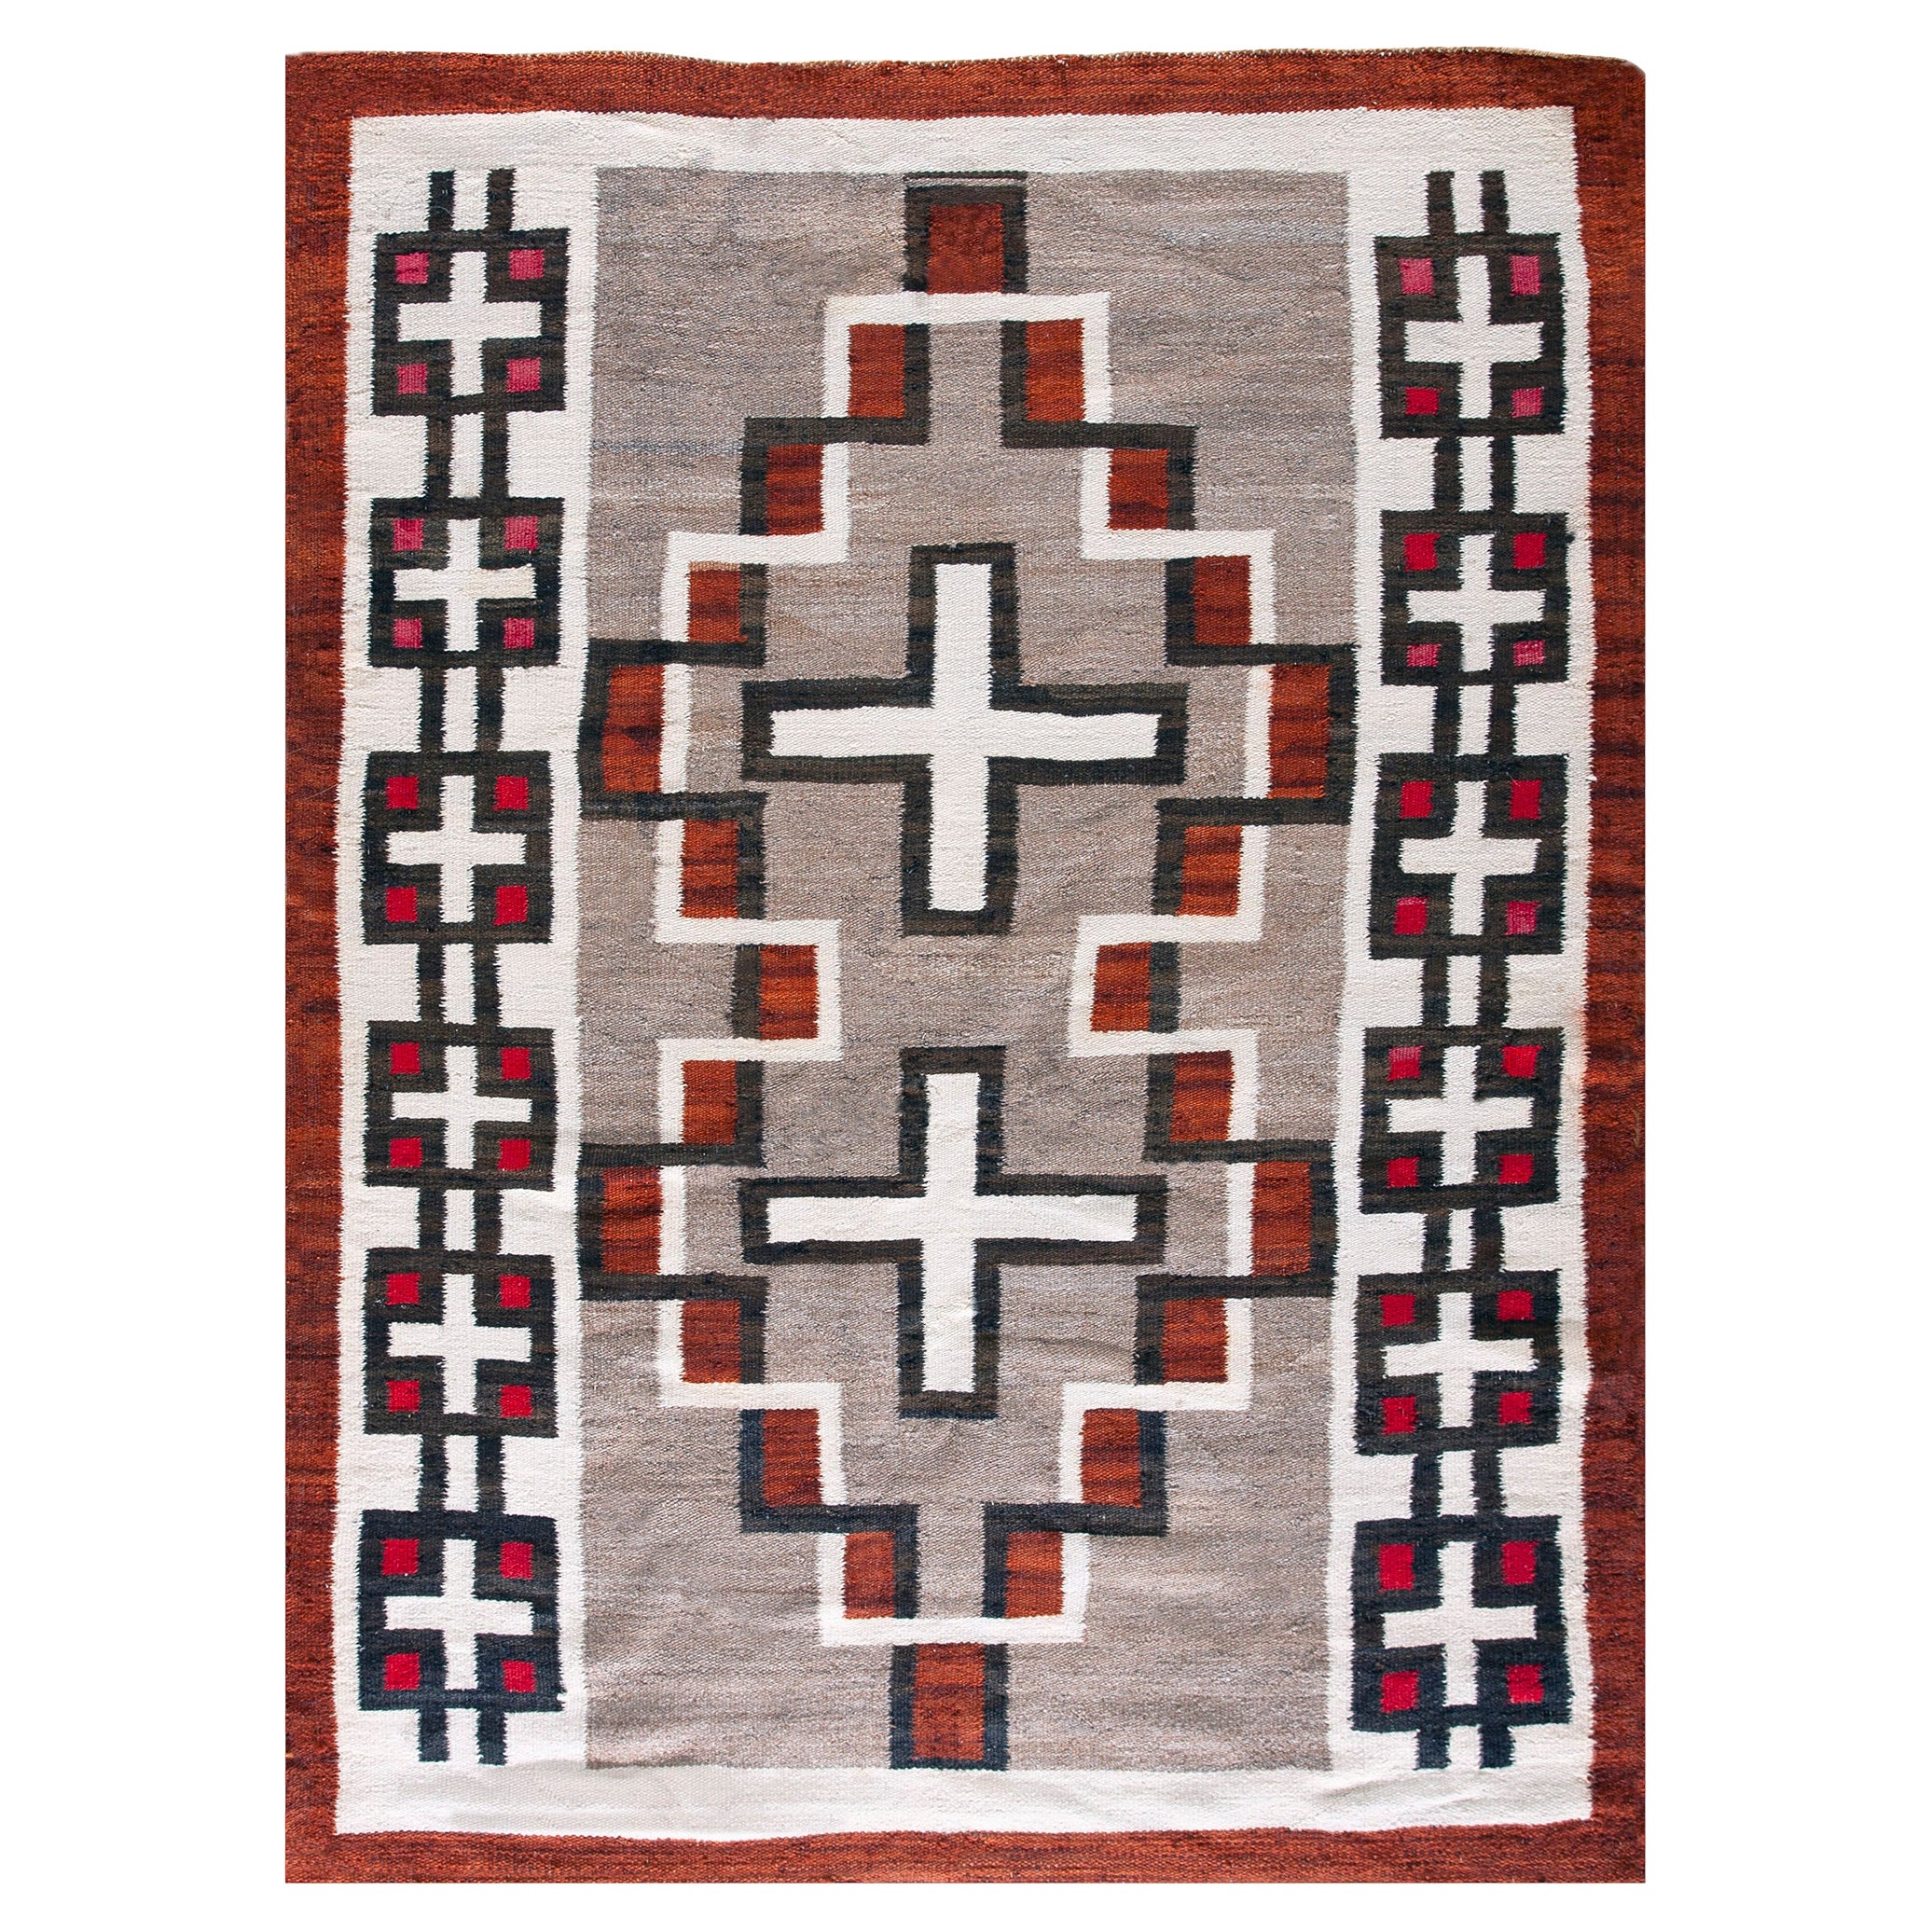 Amerikanischer Navajo-Teppich des frühen 20. Jahrhunderts ( 4' x 5'9" - 122 x 176)